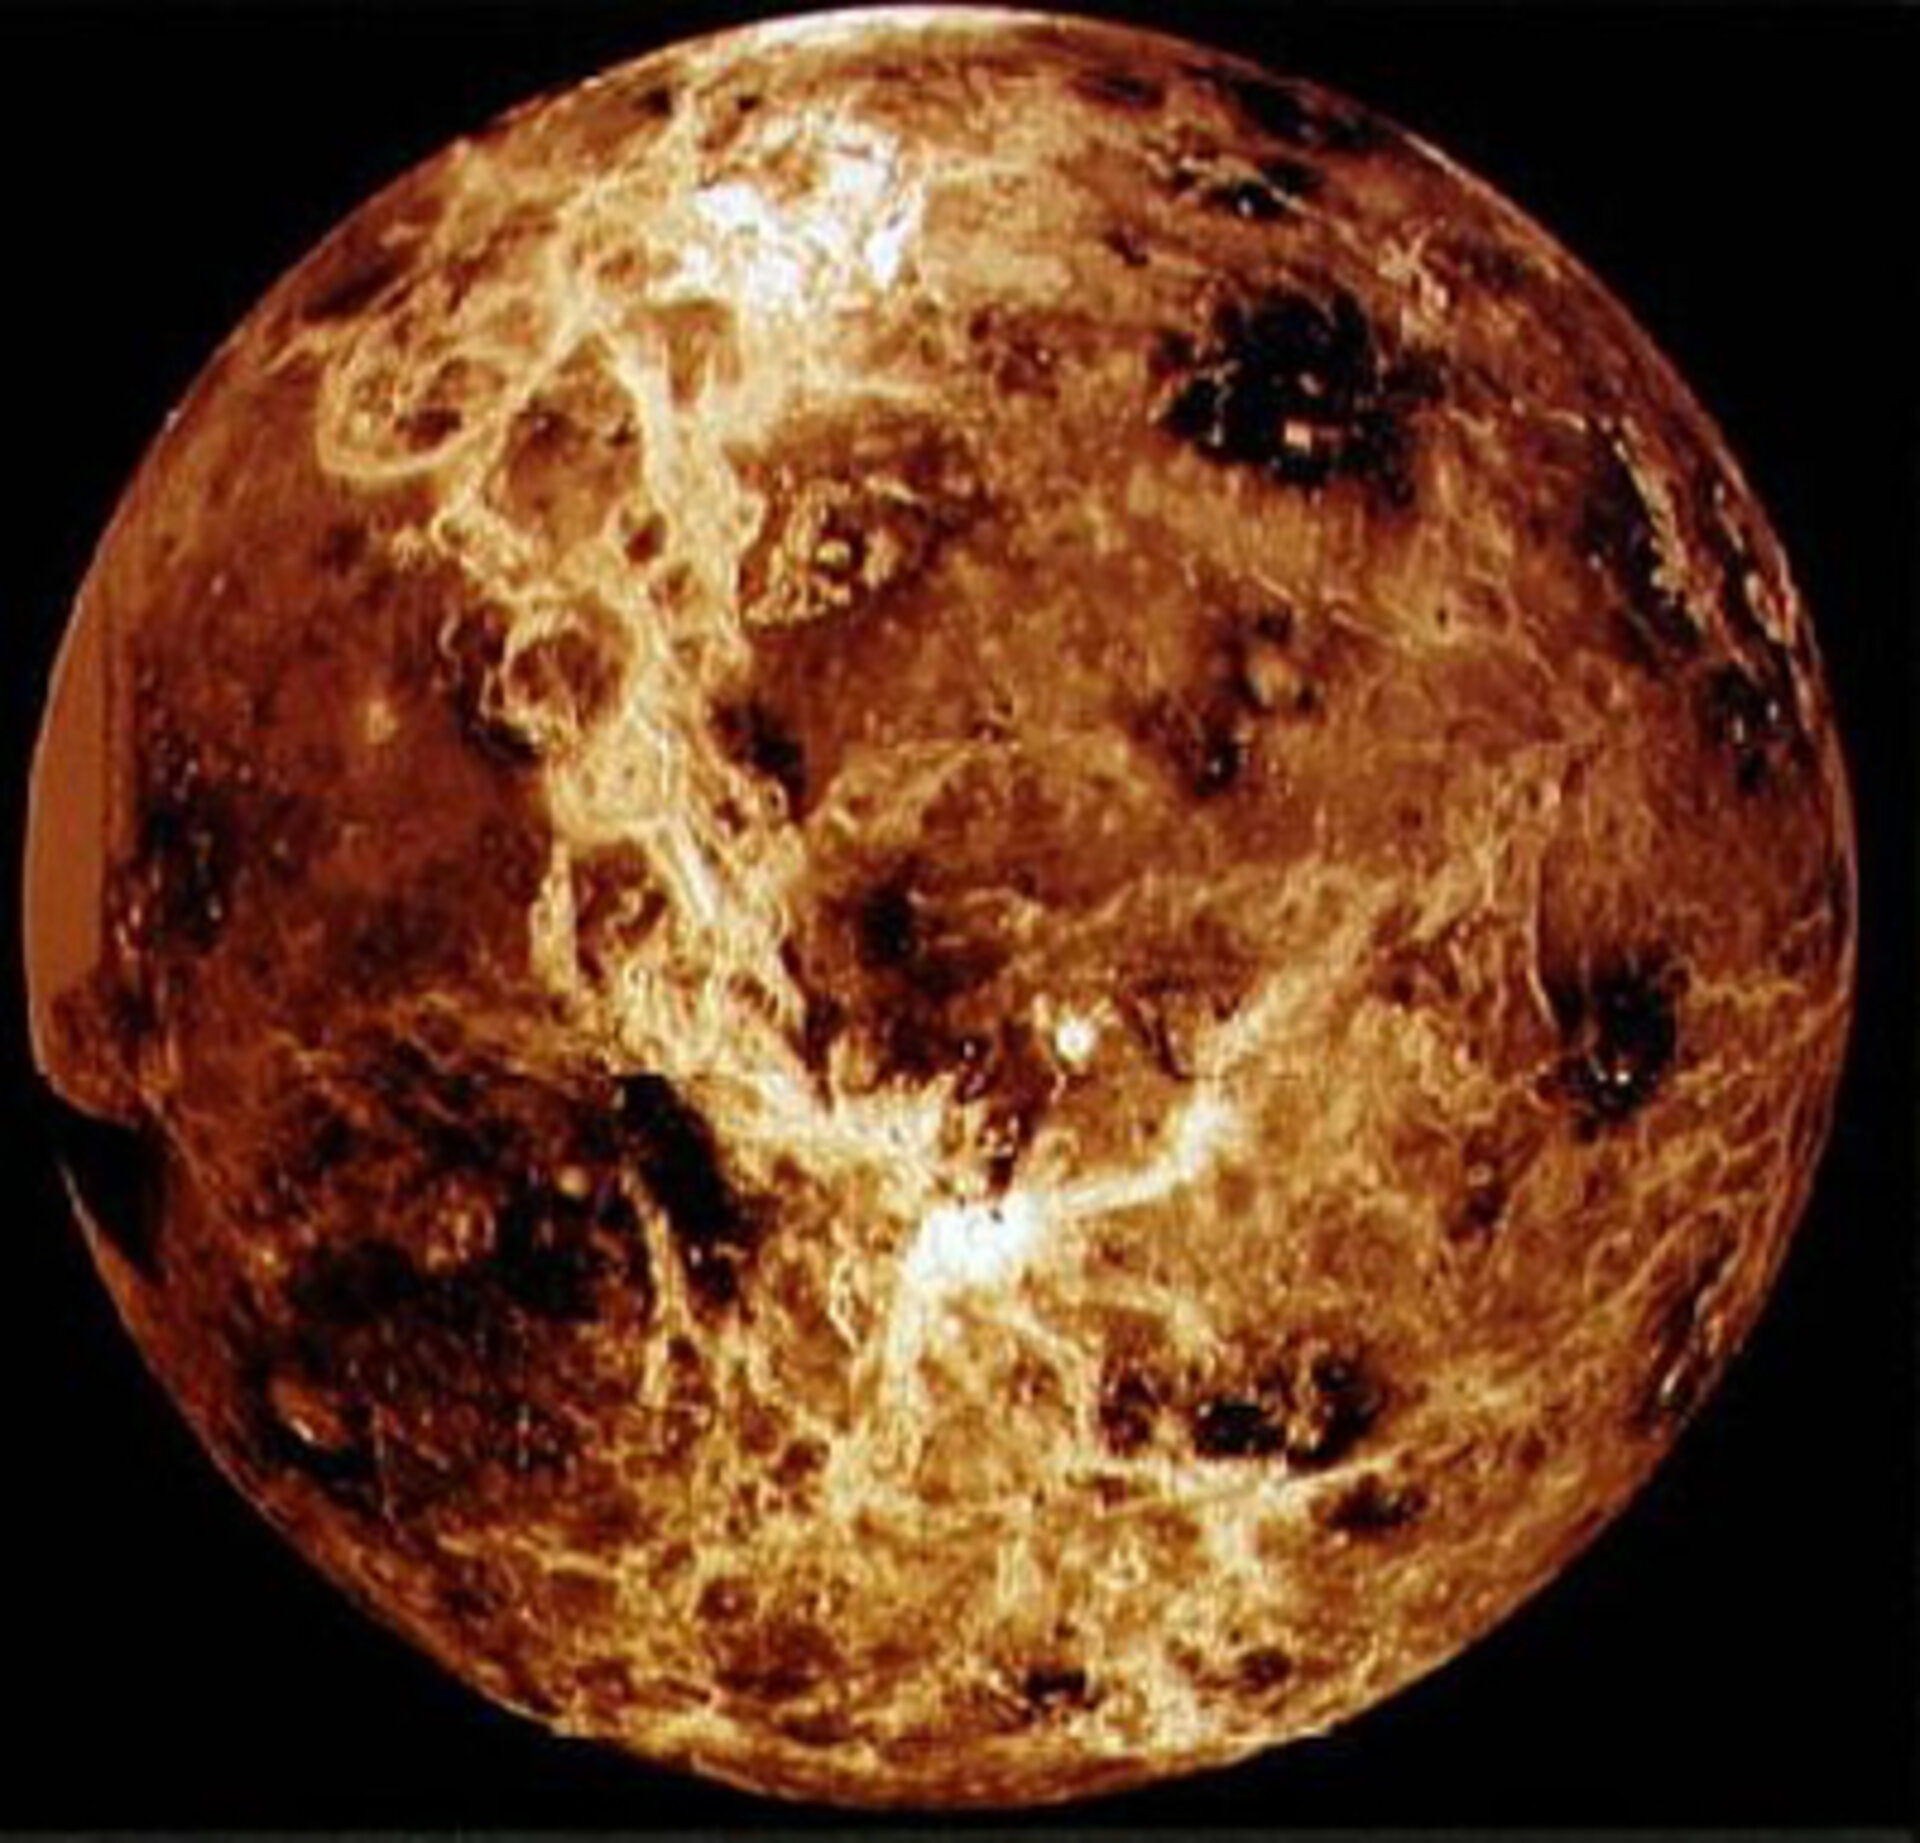 Radaraufnahme der Venus von der Nasa.Sonde Magellan